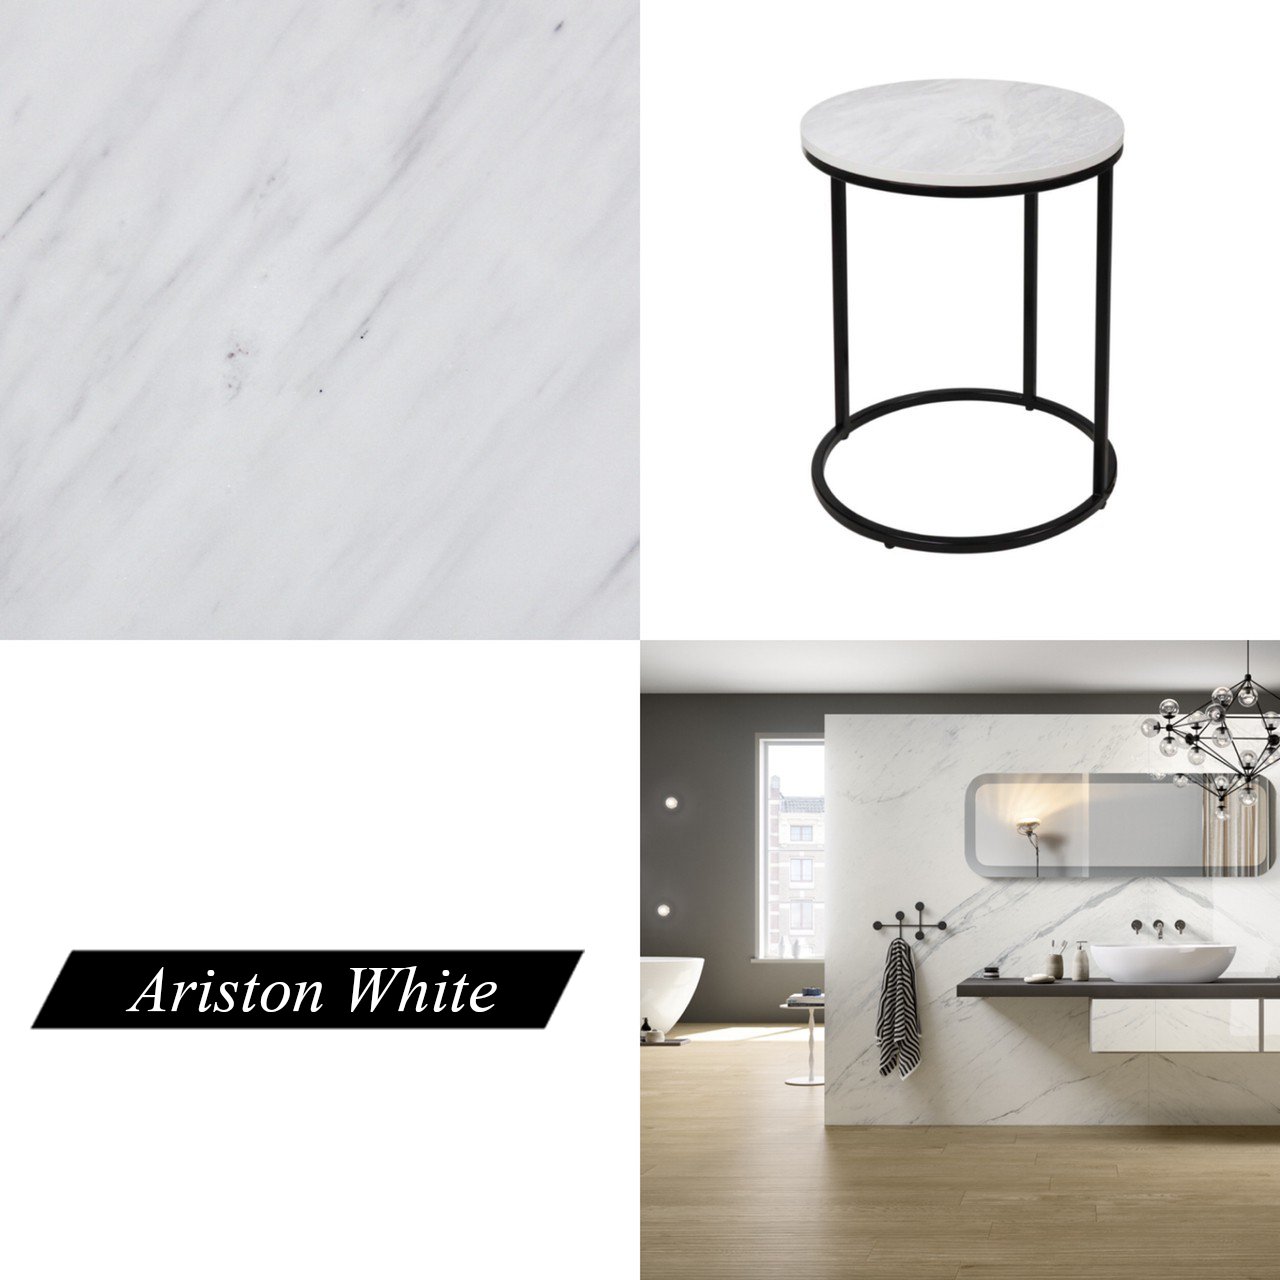 Ariston White marble